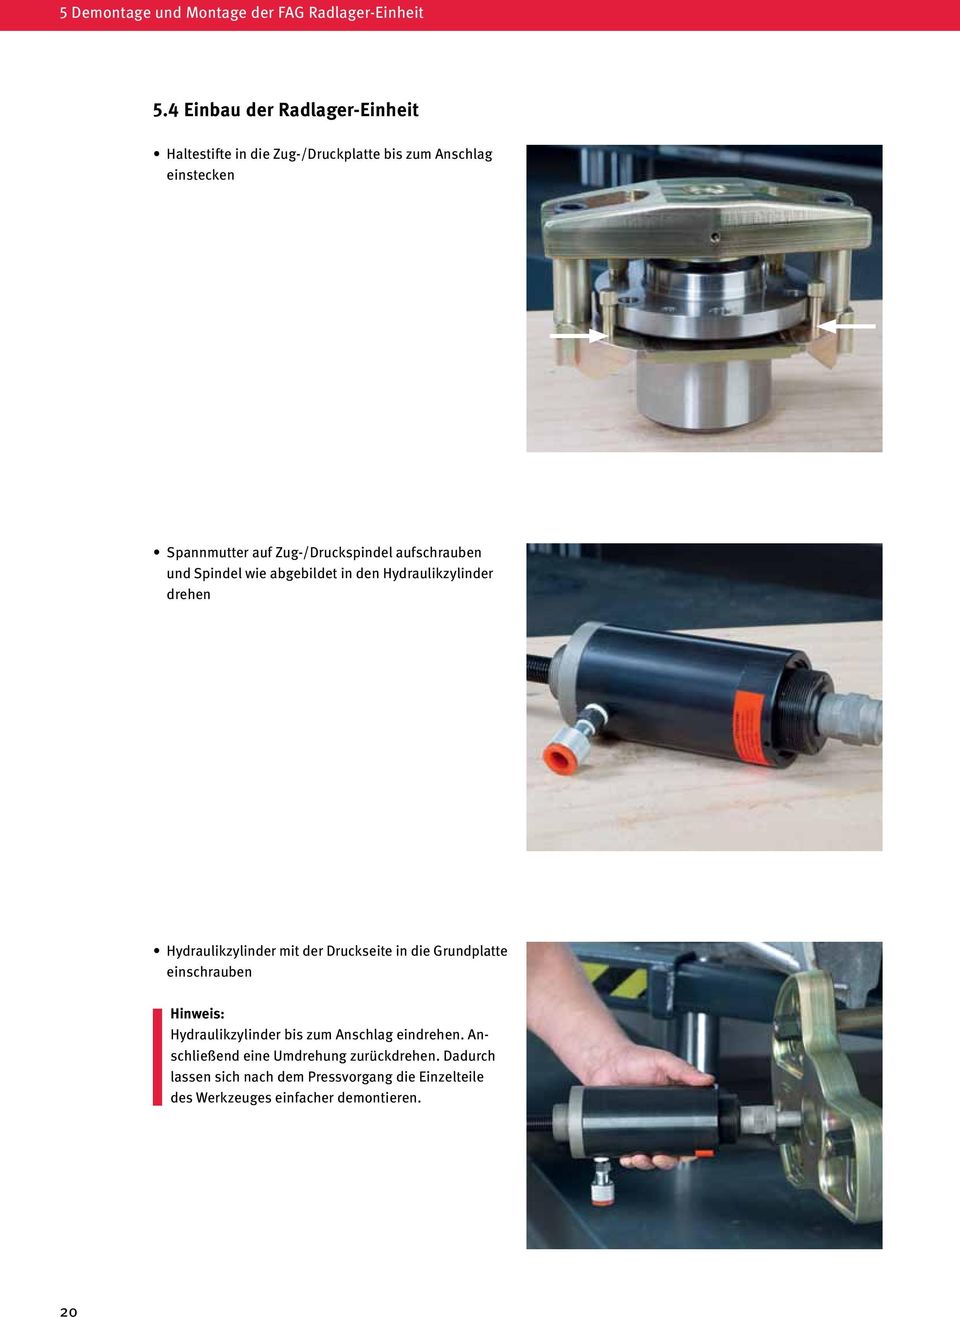 Zug-/Druckspindel aufschrauben und Spindel wie abgebildet in den Hydraulikzylinder drehen Hydraulikzylinder mit der Druckseite